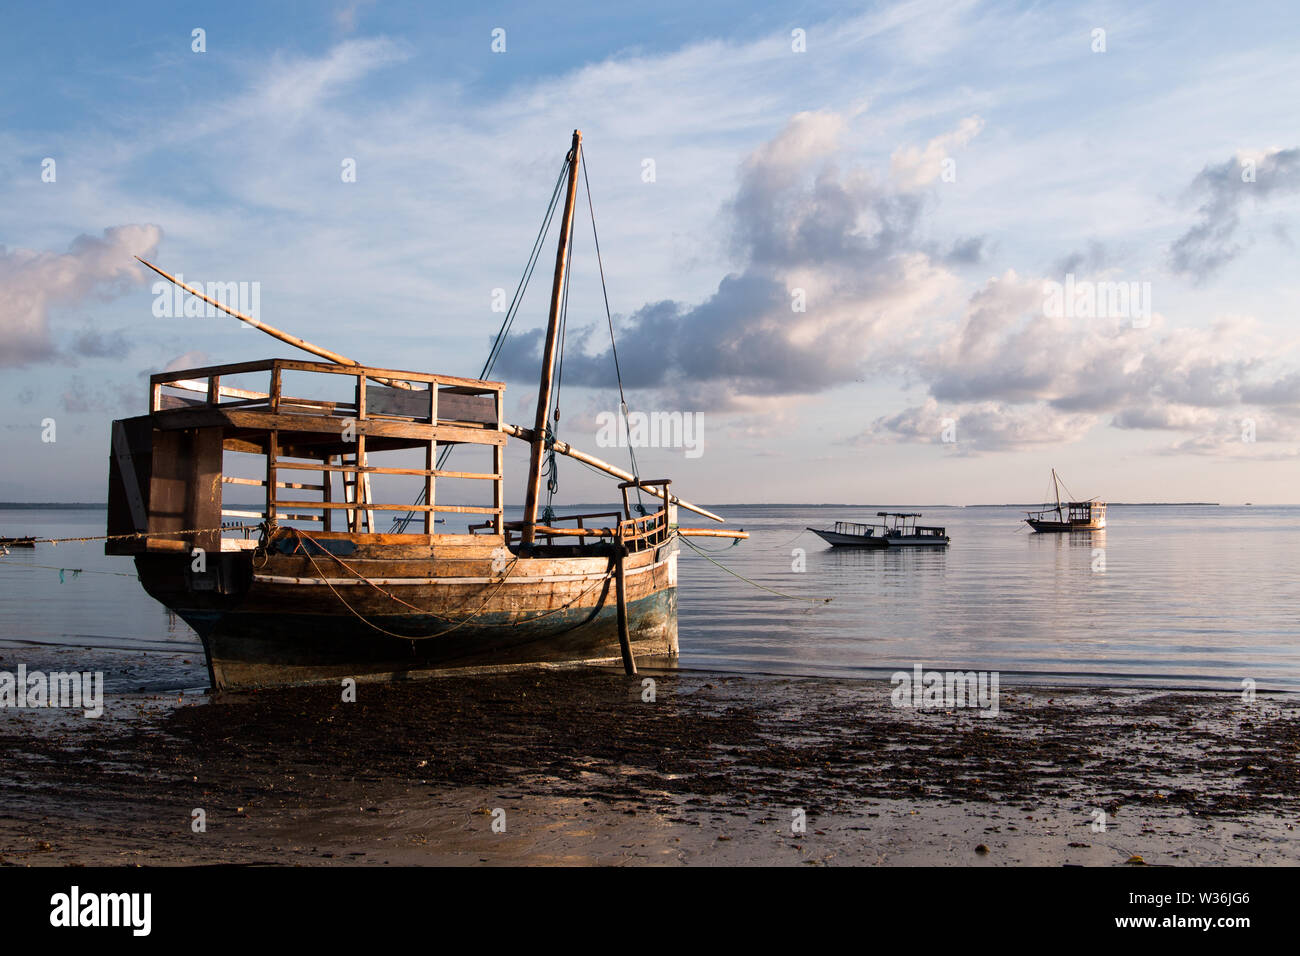 Un grand voilier en bois, sur l'eau à la plage au lever du soleil à l'île de Mafia, la Tanzanie, avec ciel nuageux et calme de l'eau. Banque D'Images